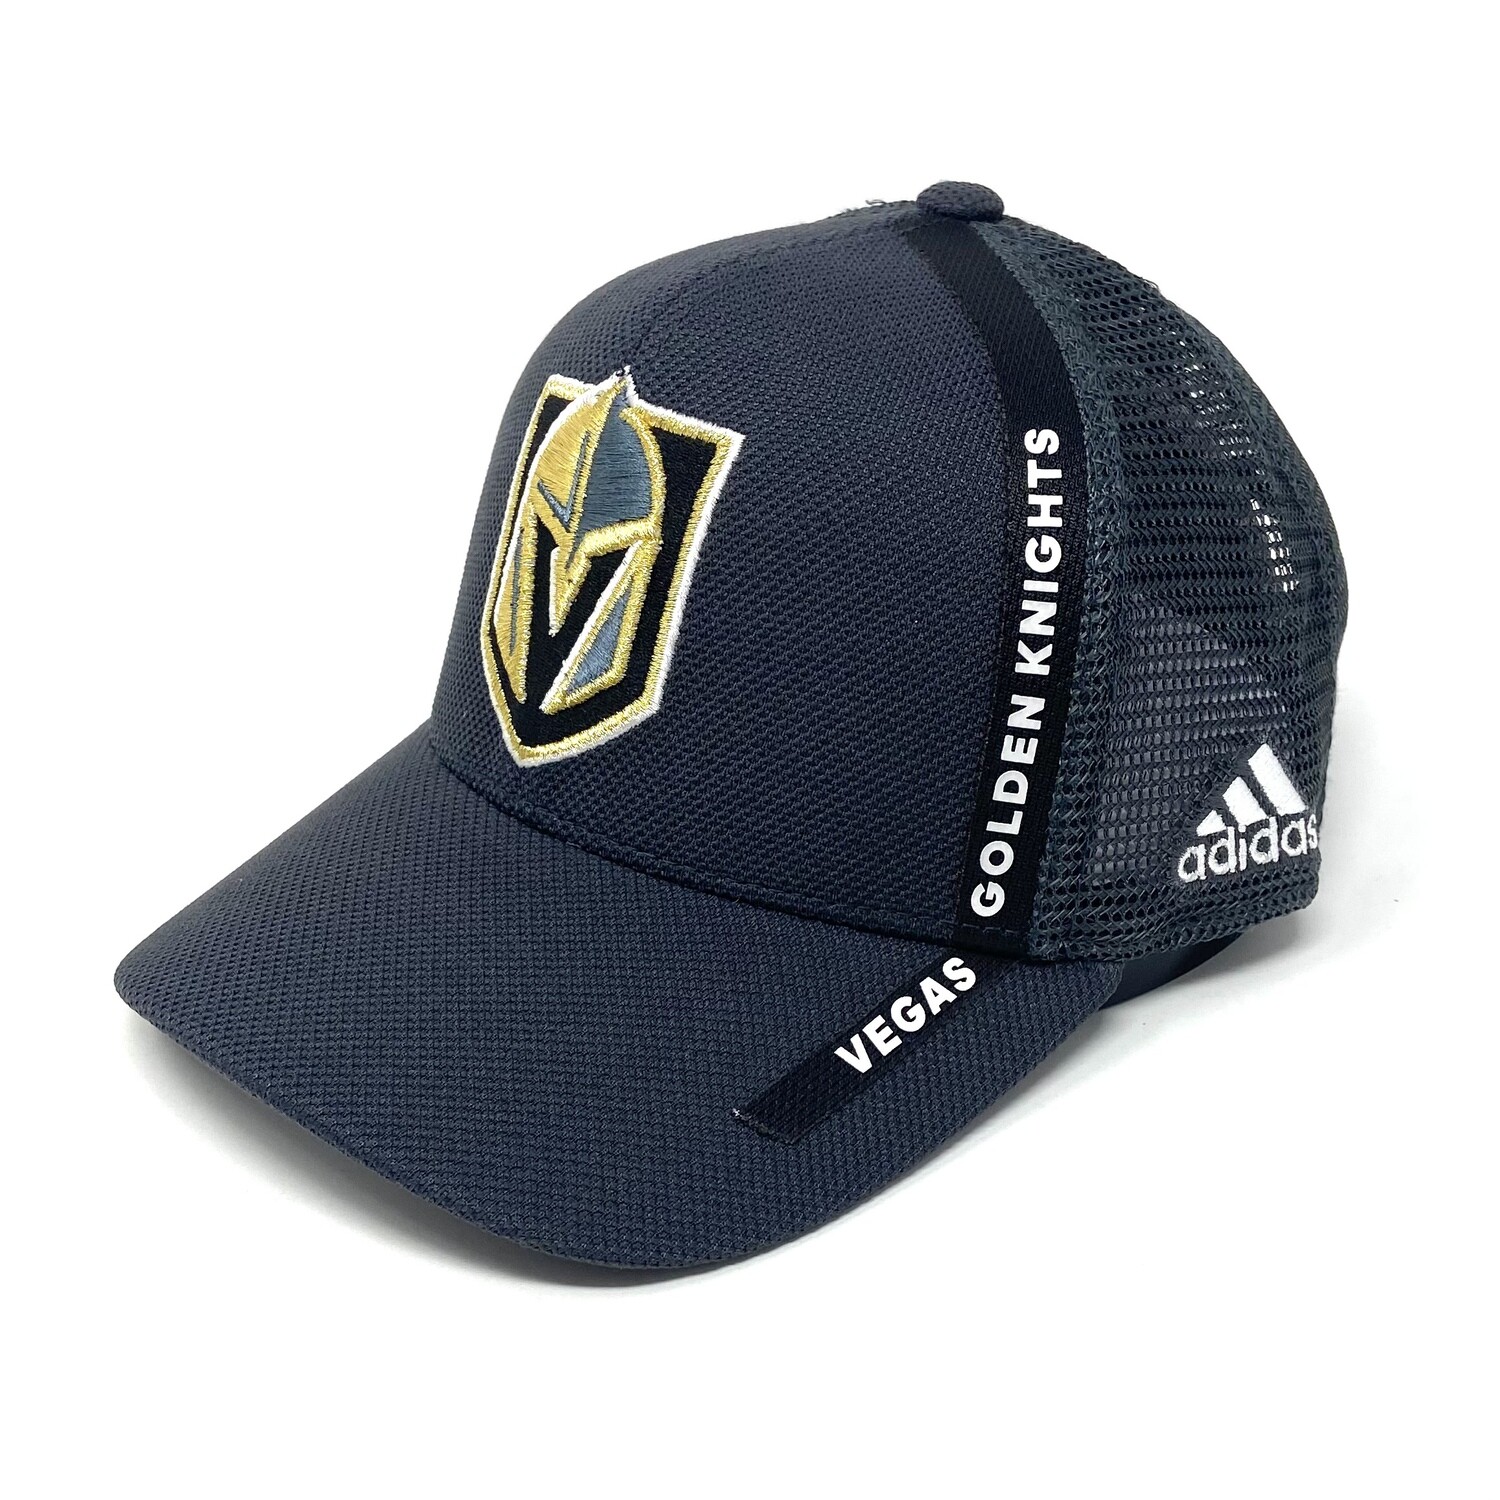 Vegas Golden Knights Men's Adidas Snapback Hat